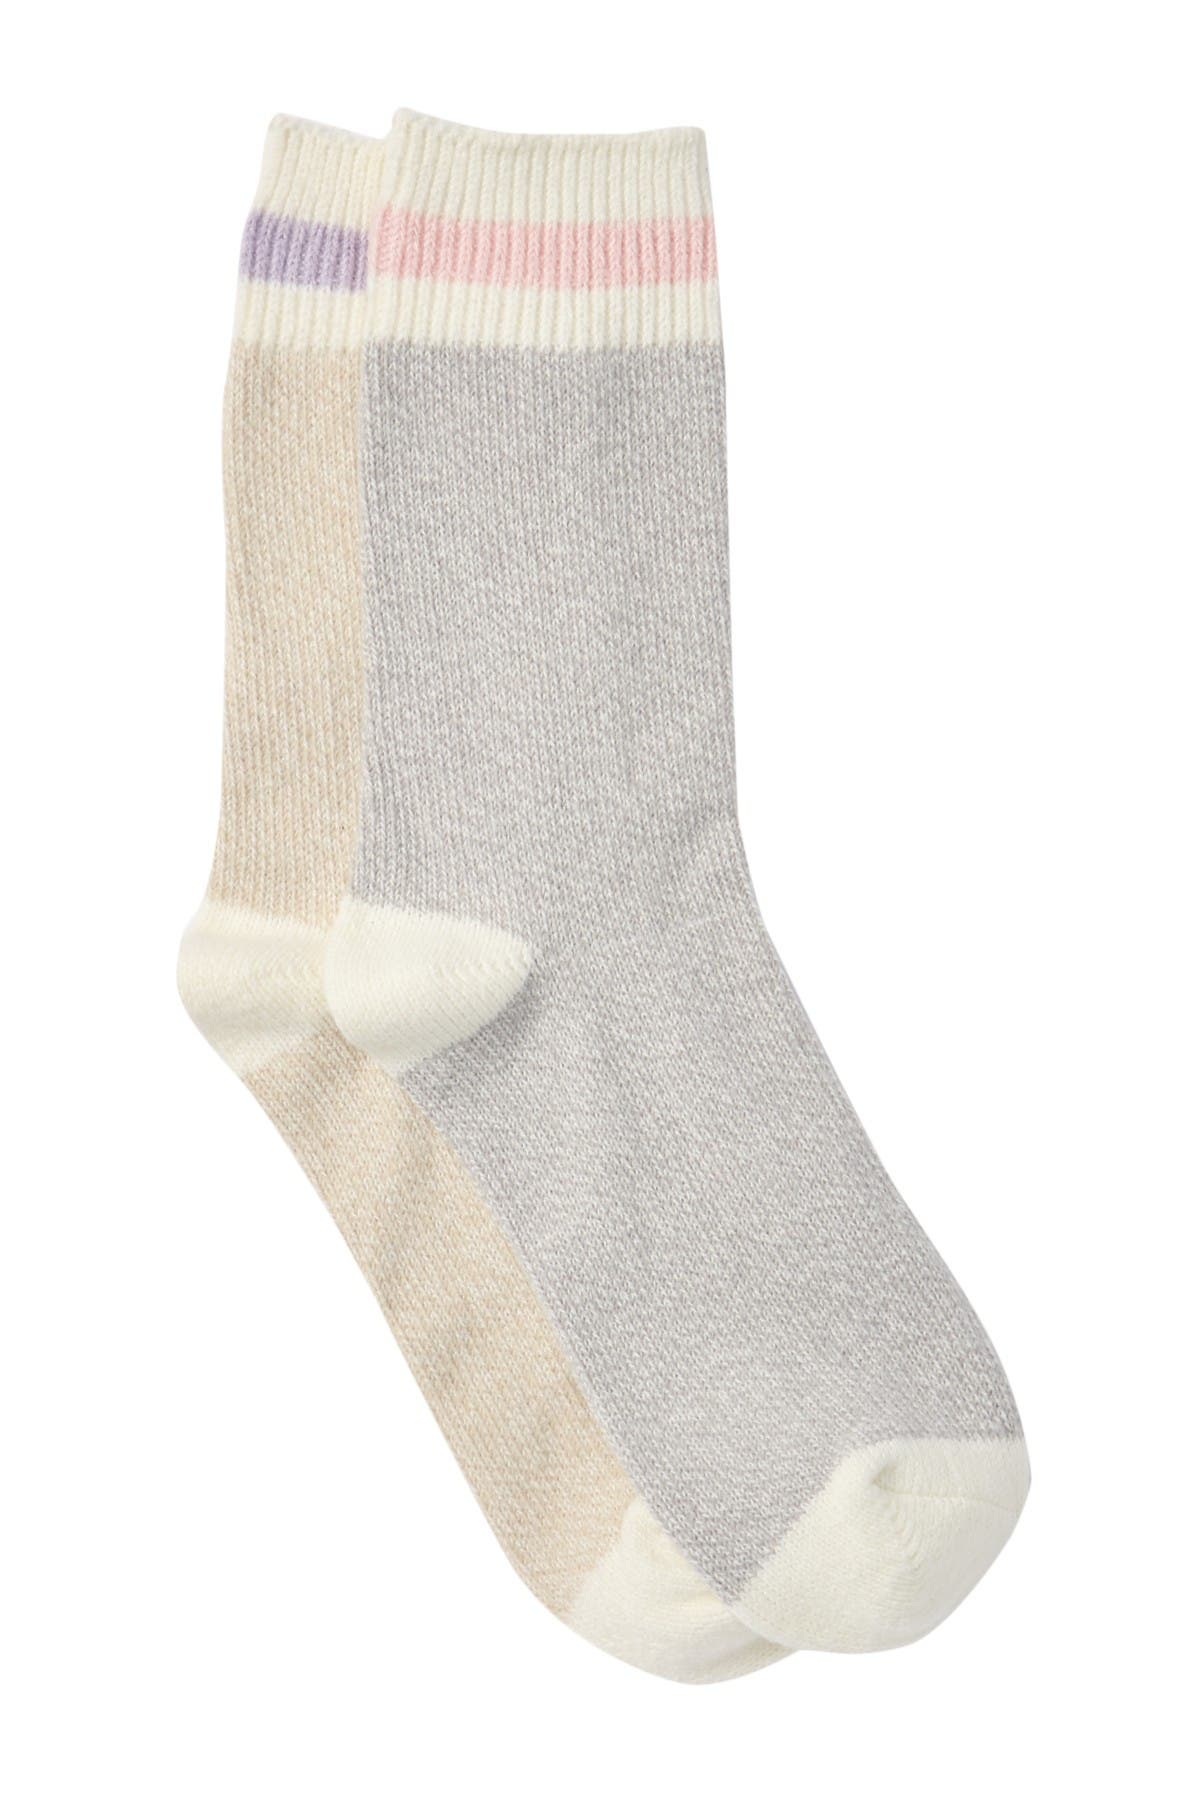 Free Press | Super Soft Chenille Socks - Pack of 2 | Nordstrom Rack